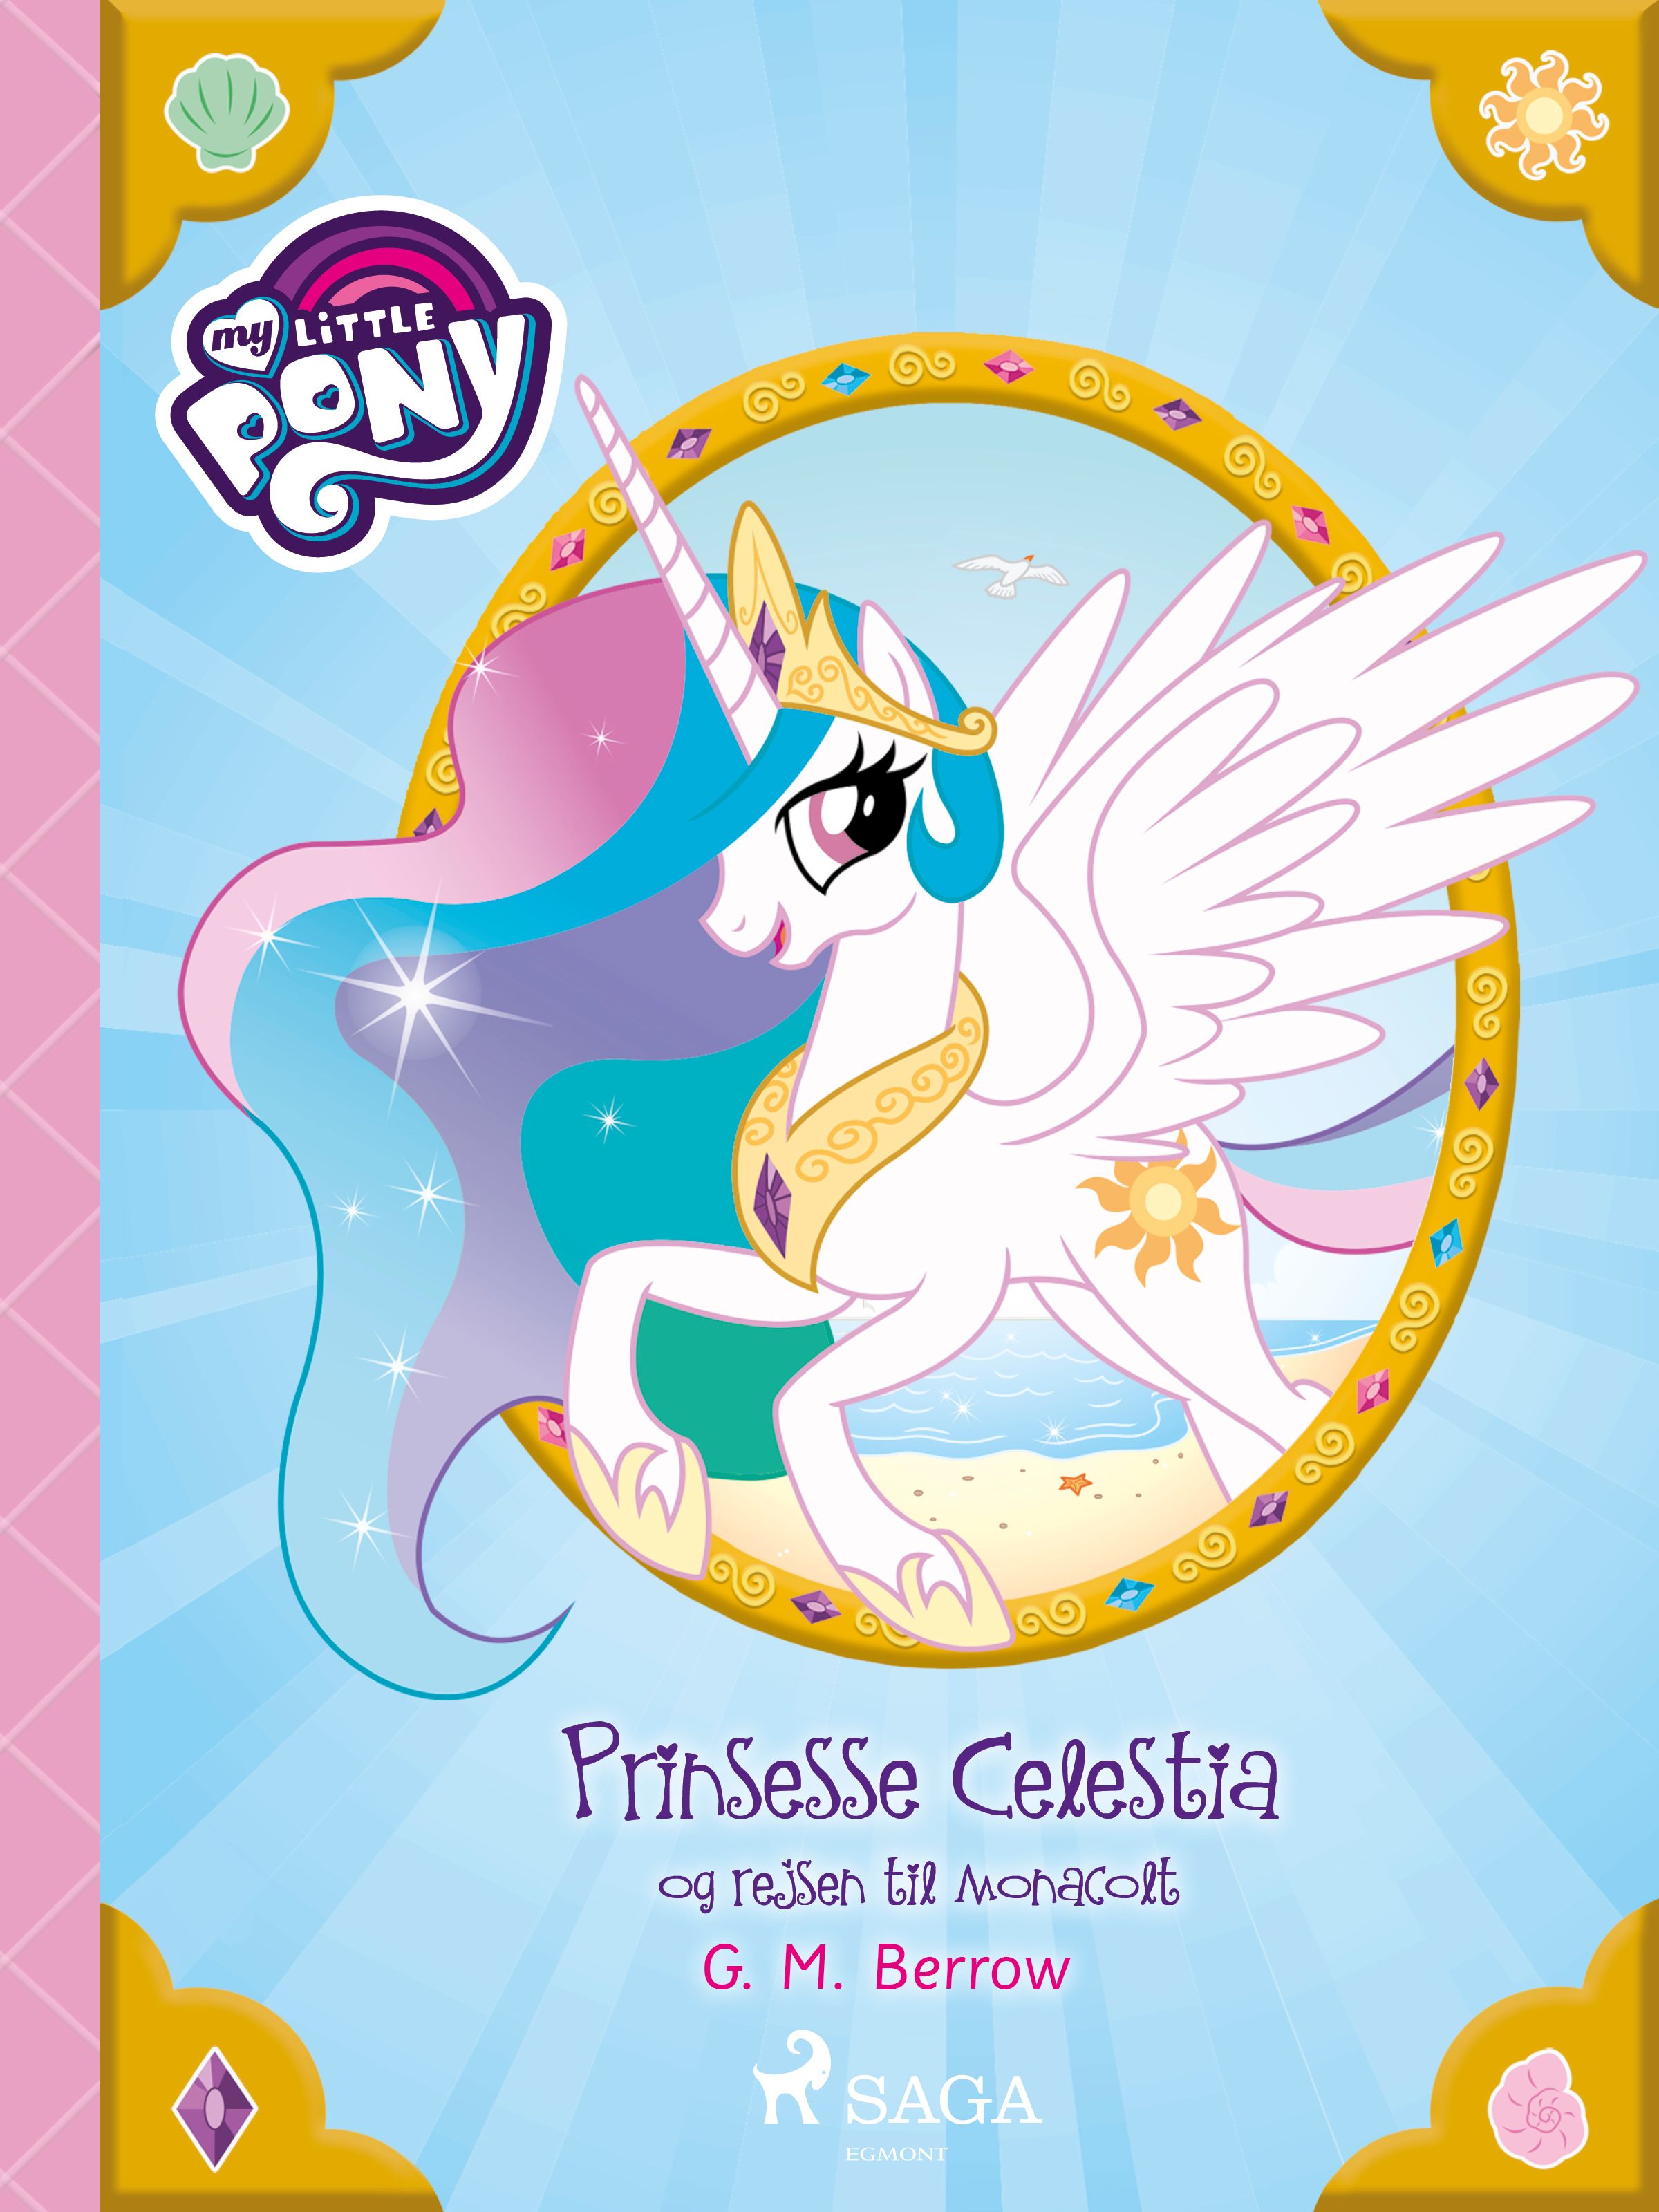 My Little Pony - Prinsesse Celestia og rejsen til Monacolt, e-bog af G. M. Berrow